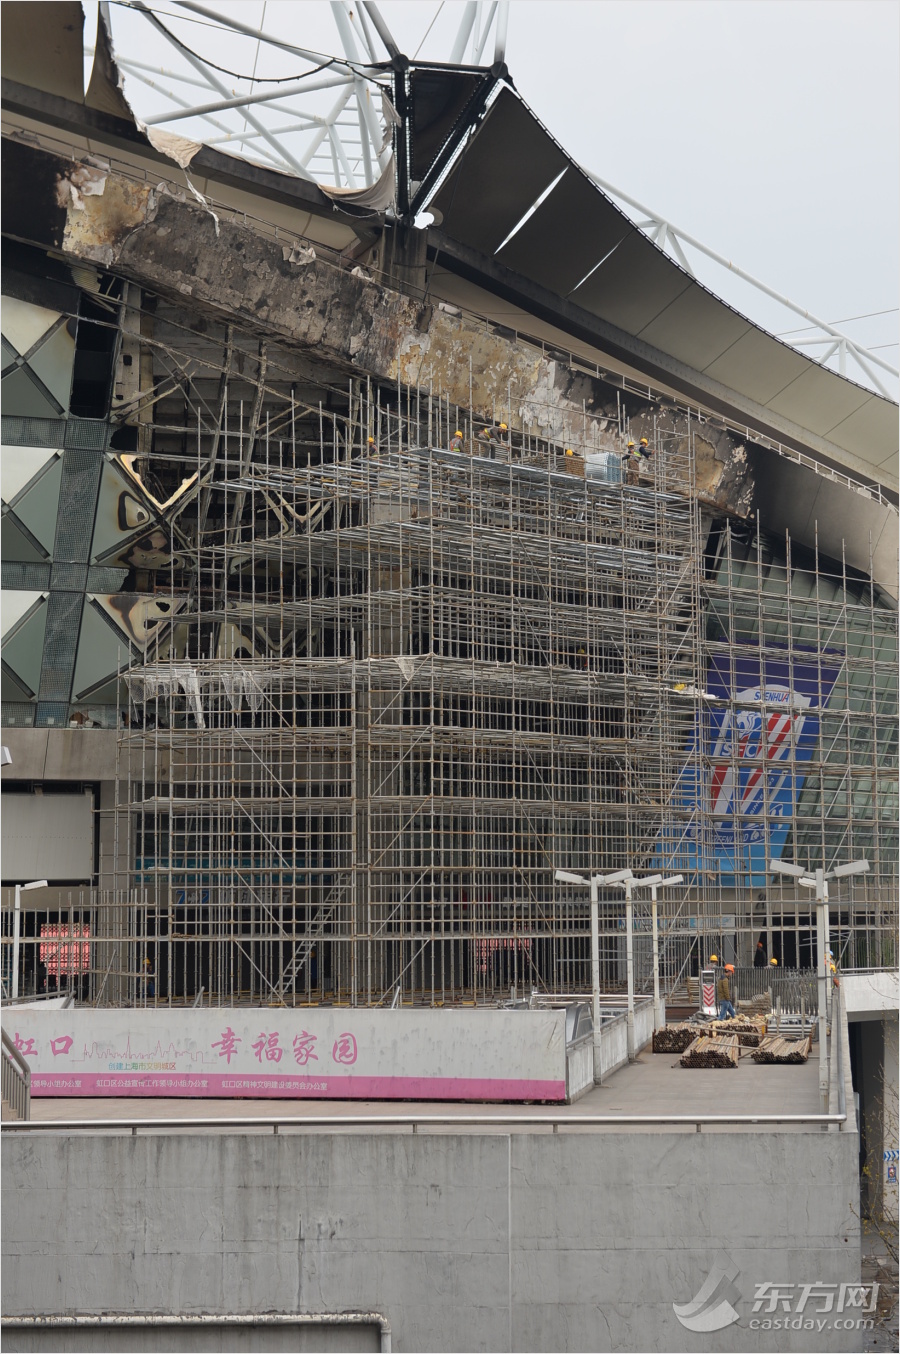 上海热线HOT新闻--上海虹口足球场加紧修复 检